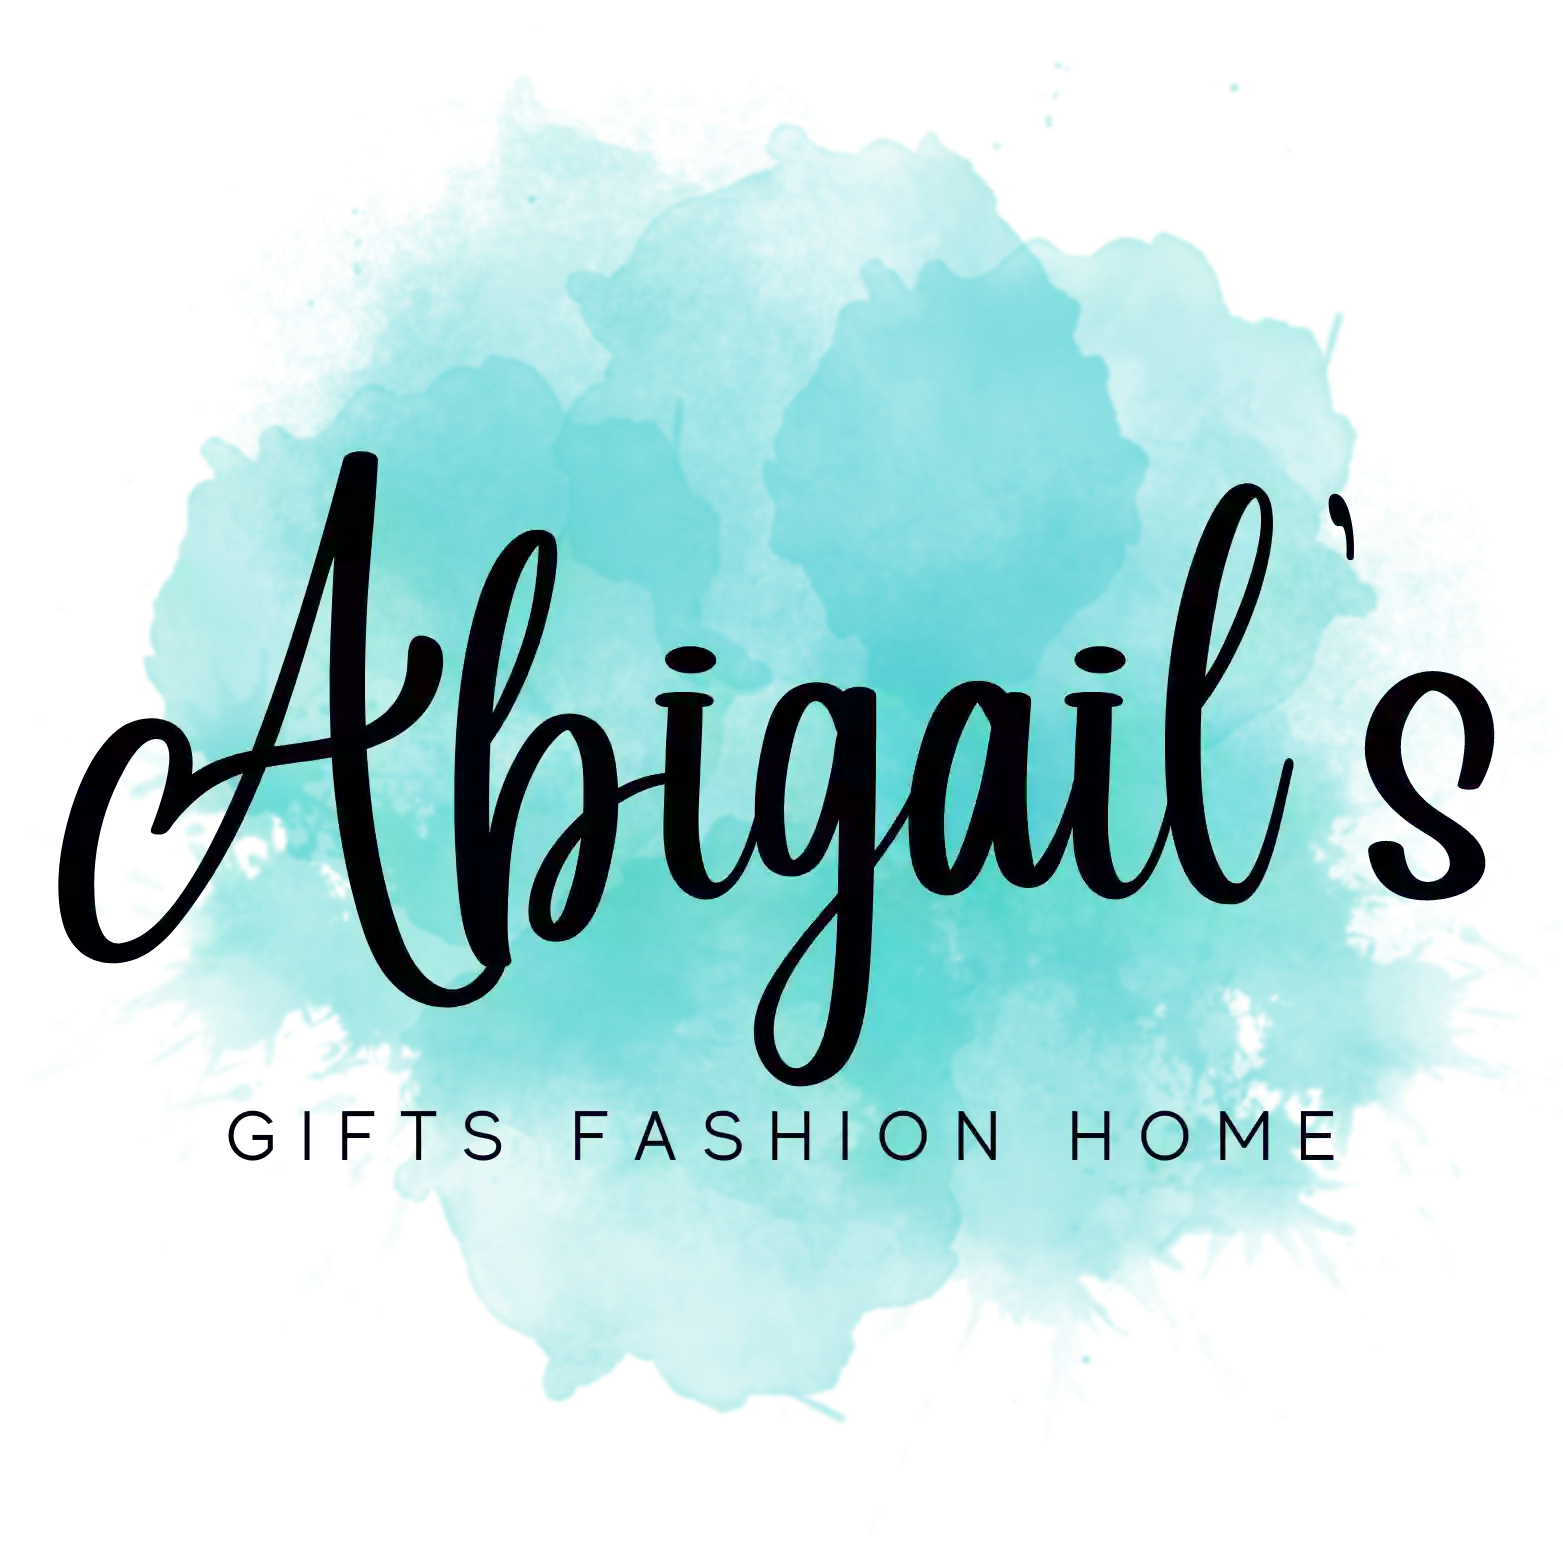 Abigail's Gift Boutique